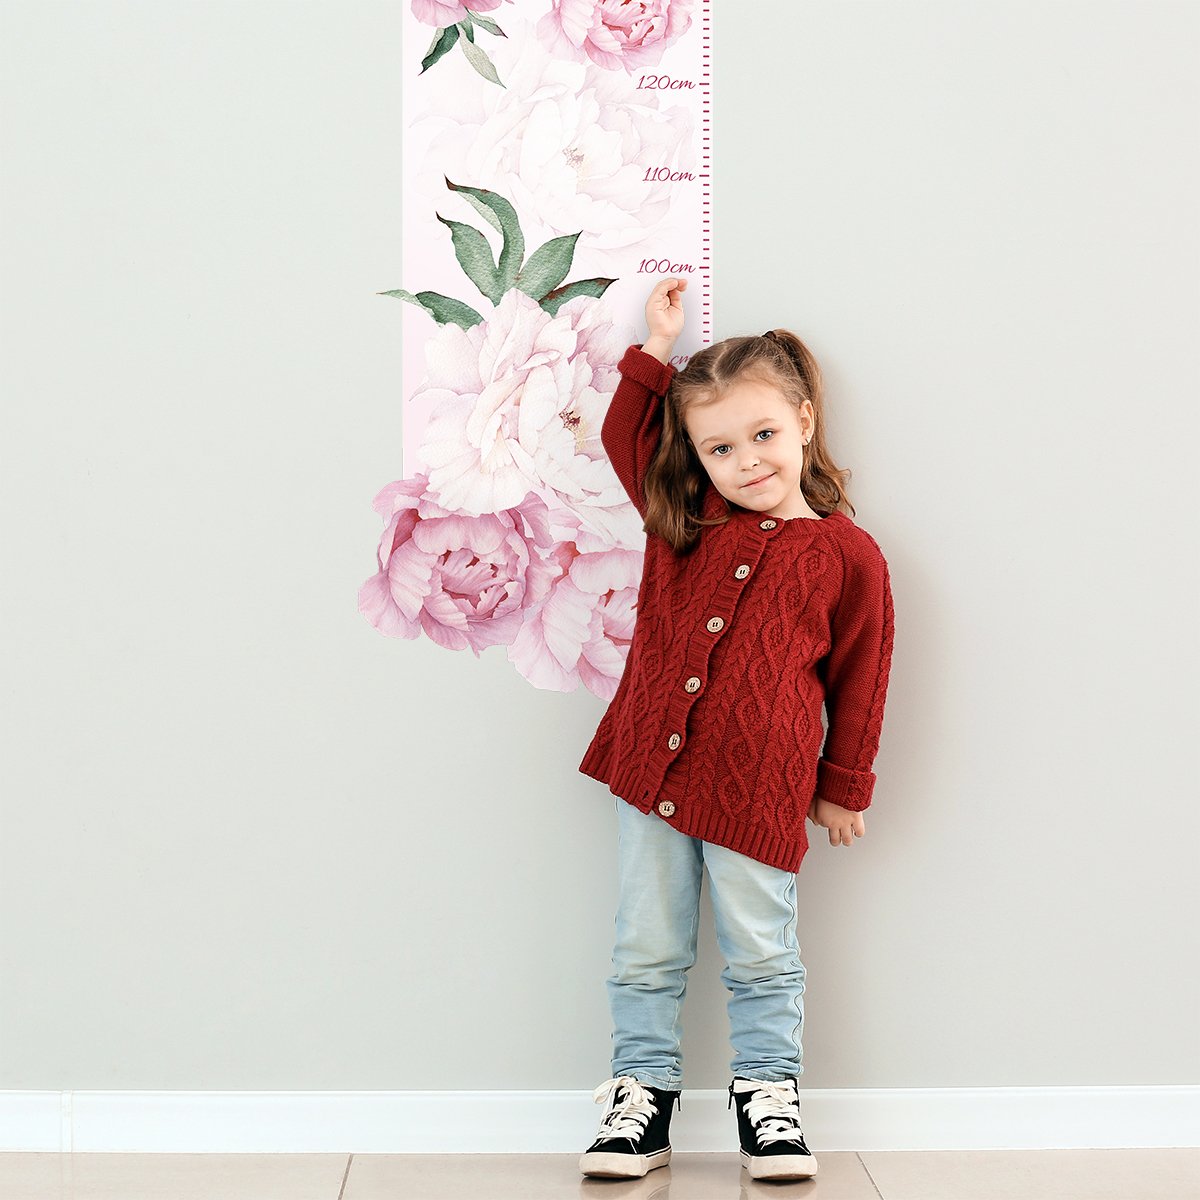 Naklejka na ścianę miarka wzrostu do pokoju dziewczynki różowe kwiaty#kolor_rozowy-mix